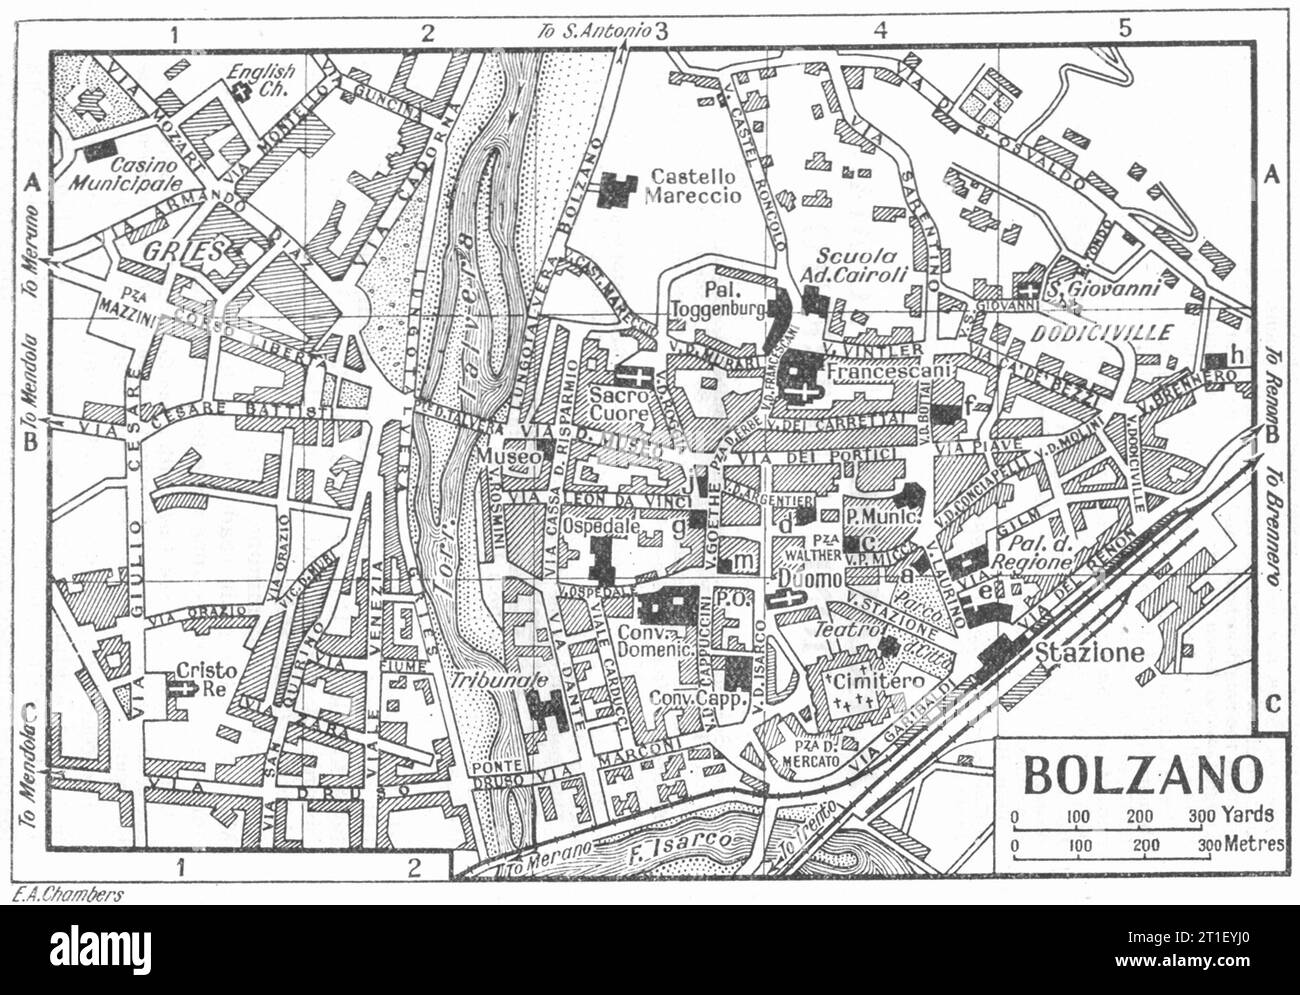 Pianta della città DI BOLZANO. Italia 1953 vecchia mappa d'epoca Foto Stock